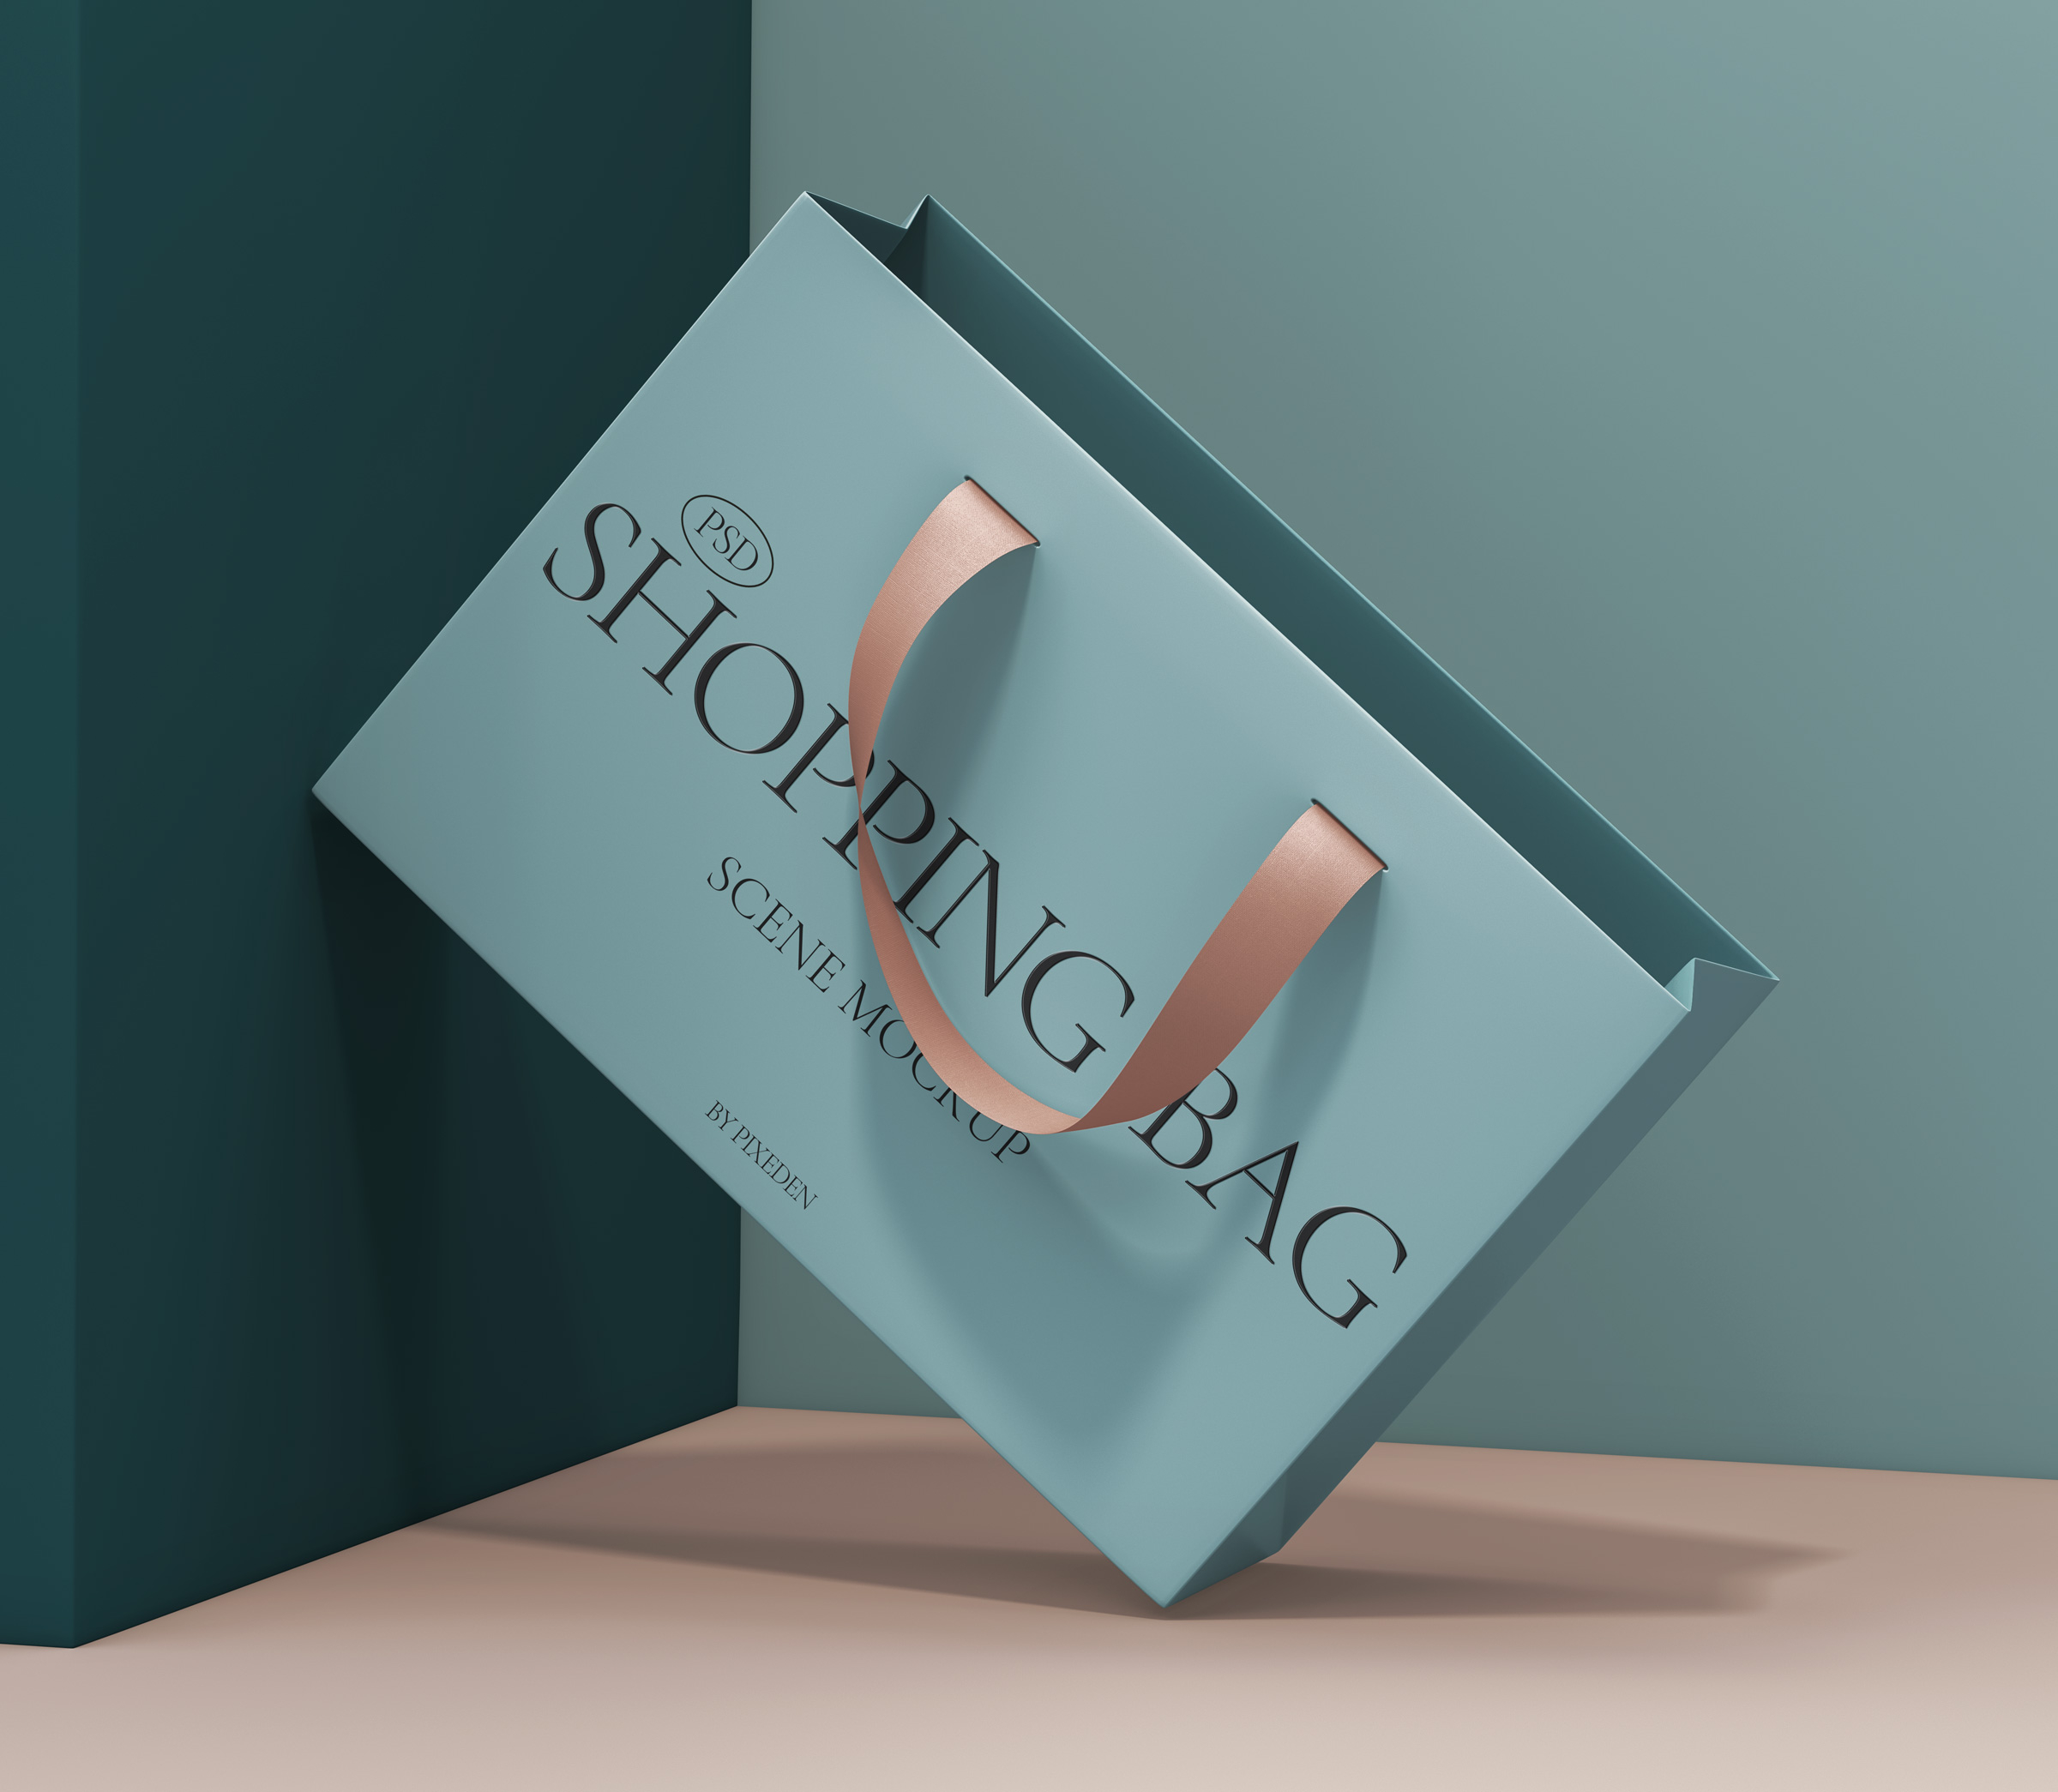 Free Shopping Bag Mockup (PSD)